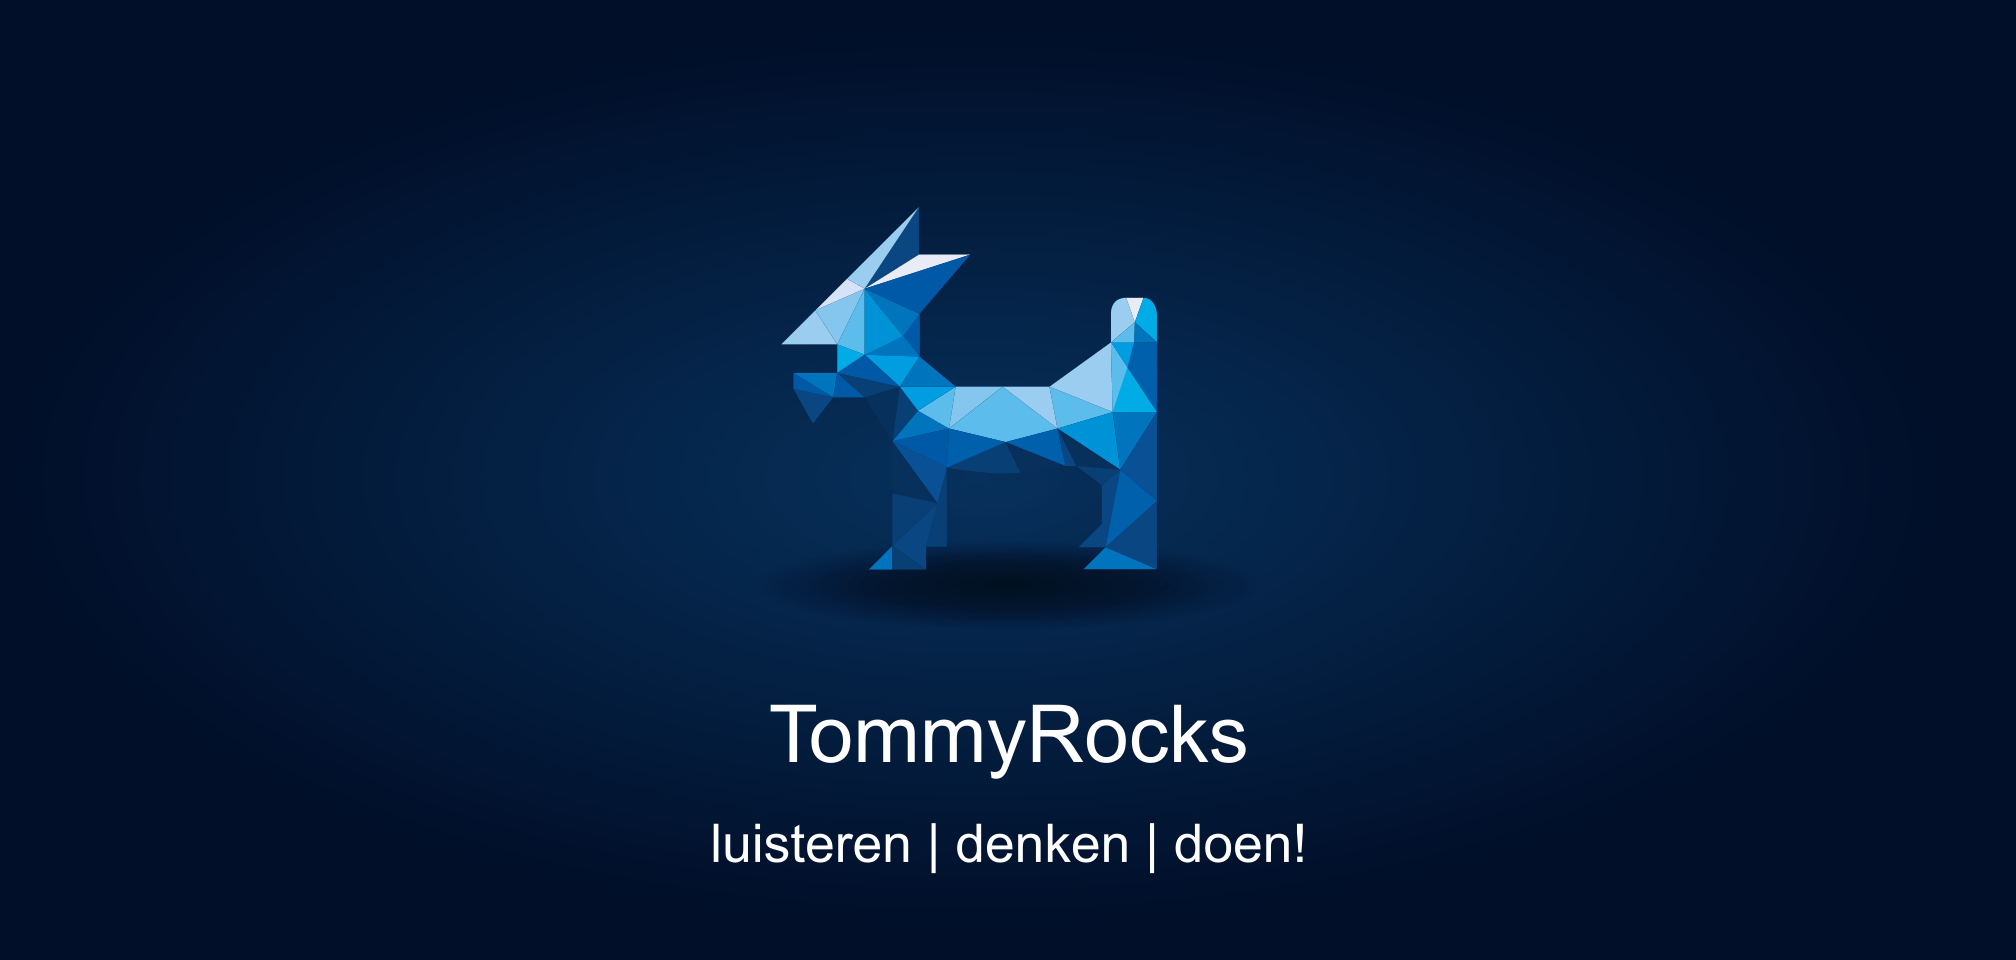 https://www.tommyrocks.nl/wp-content/uploads/2022/05/TommyRocks-background-1-Buddy-default-position-v2.png